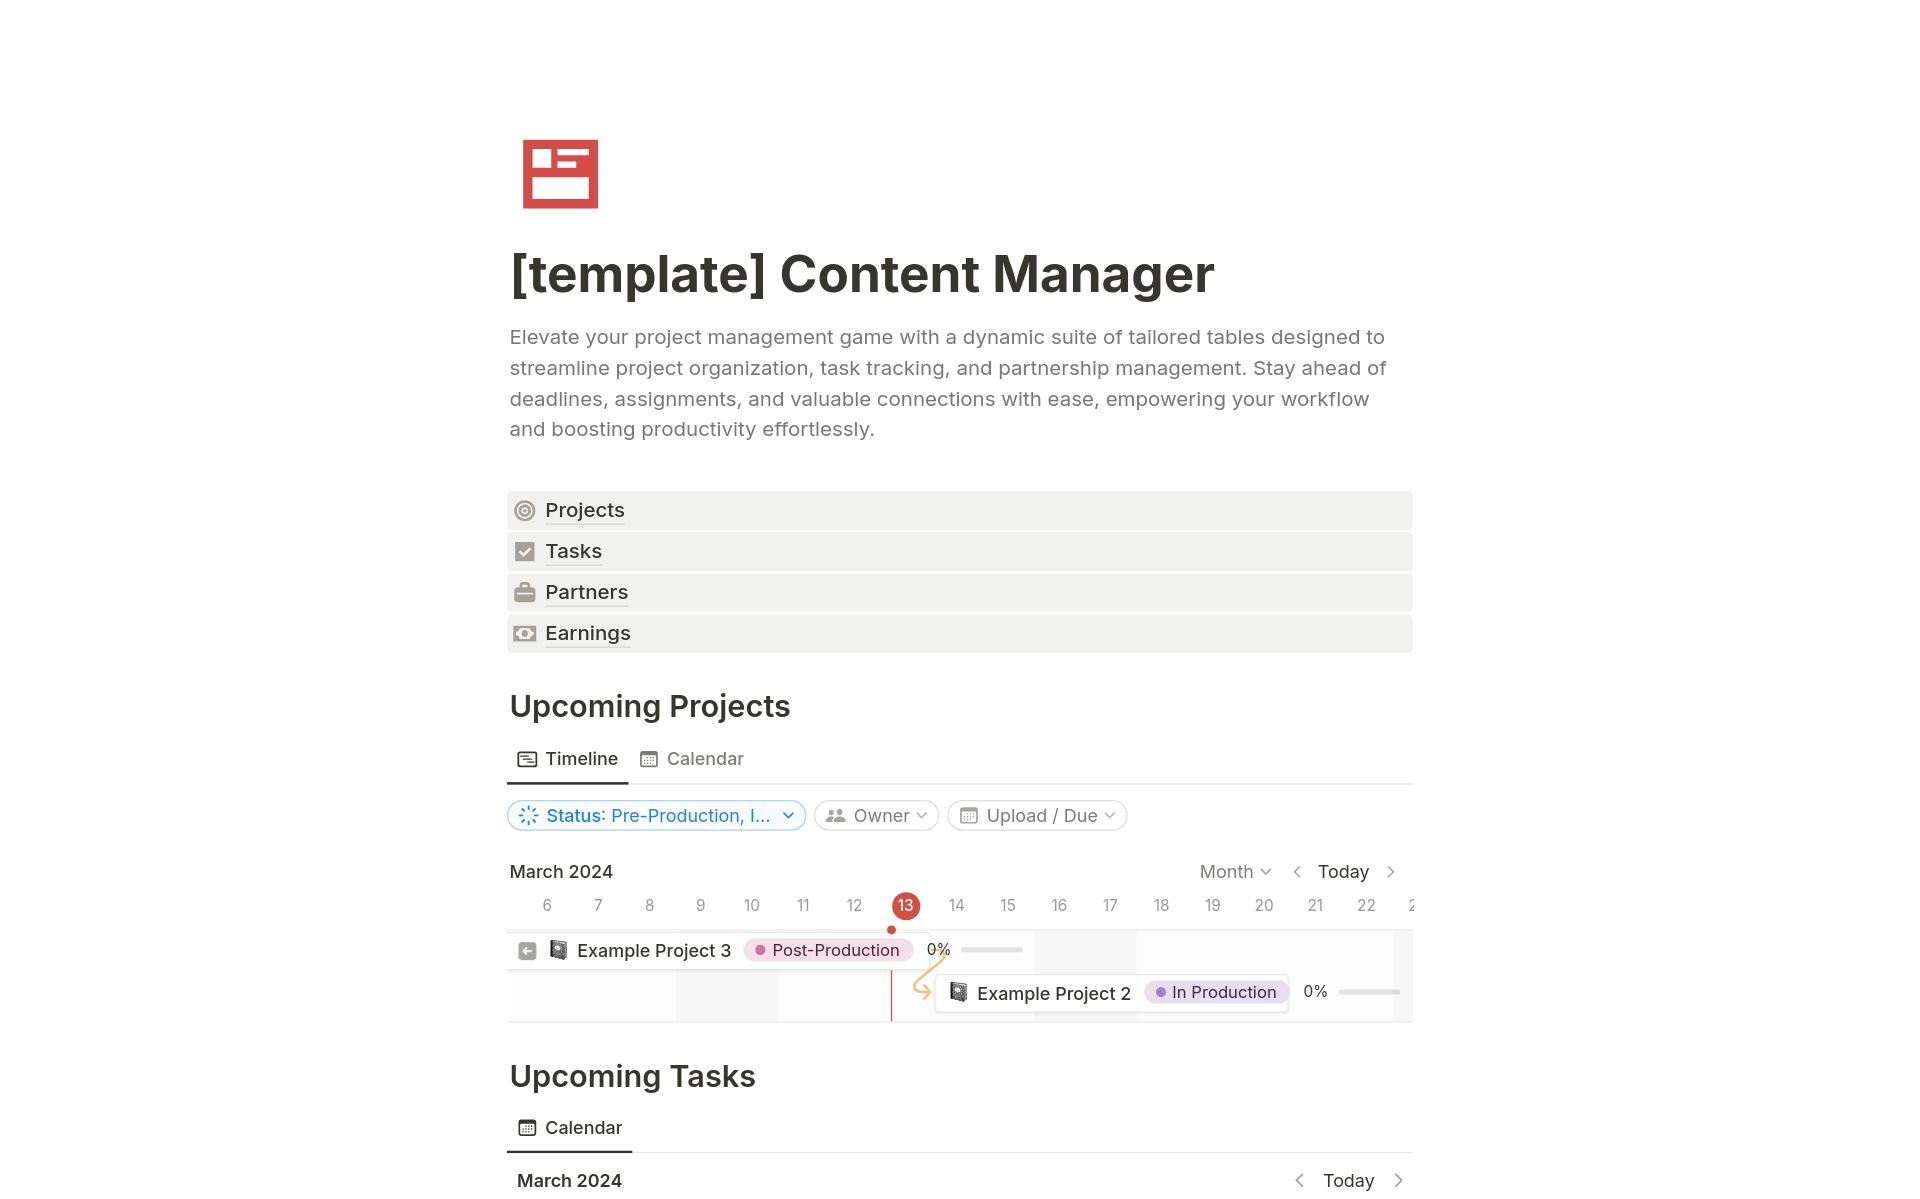 Vista previa de una plantilla para Content Manager